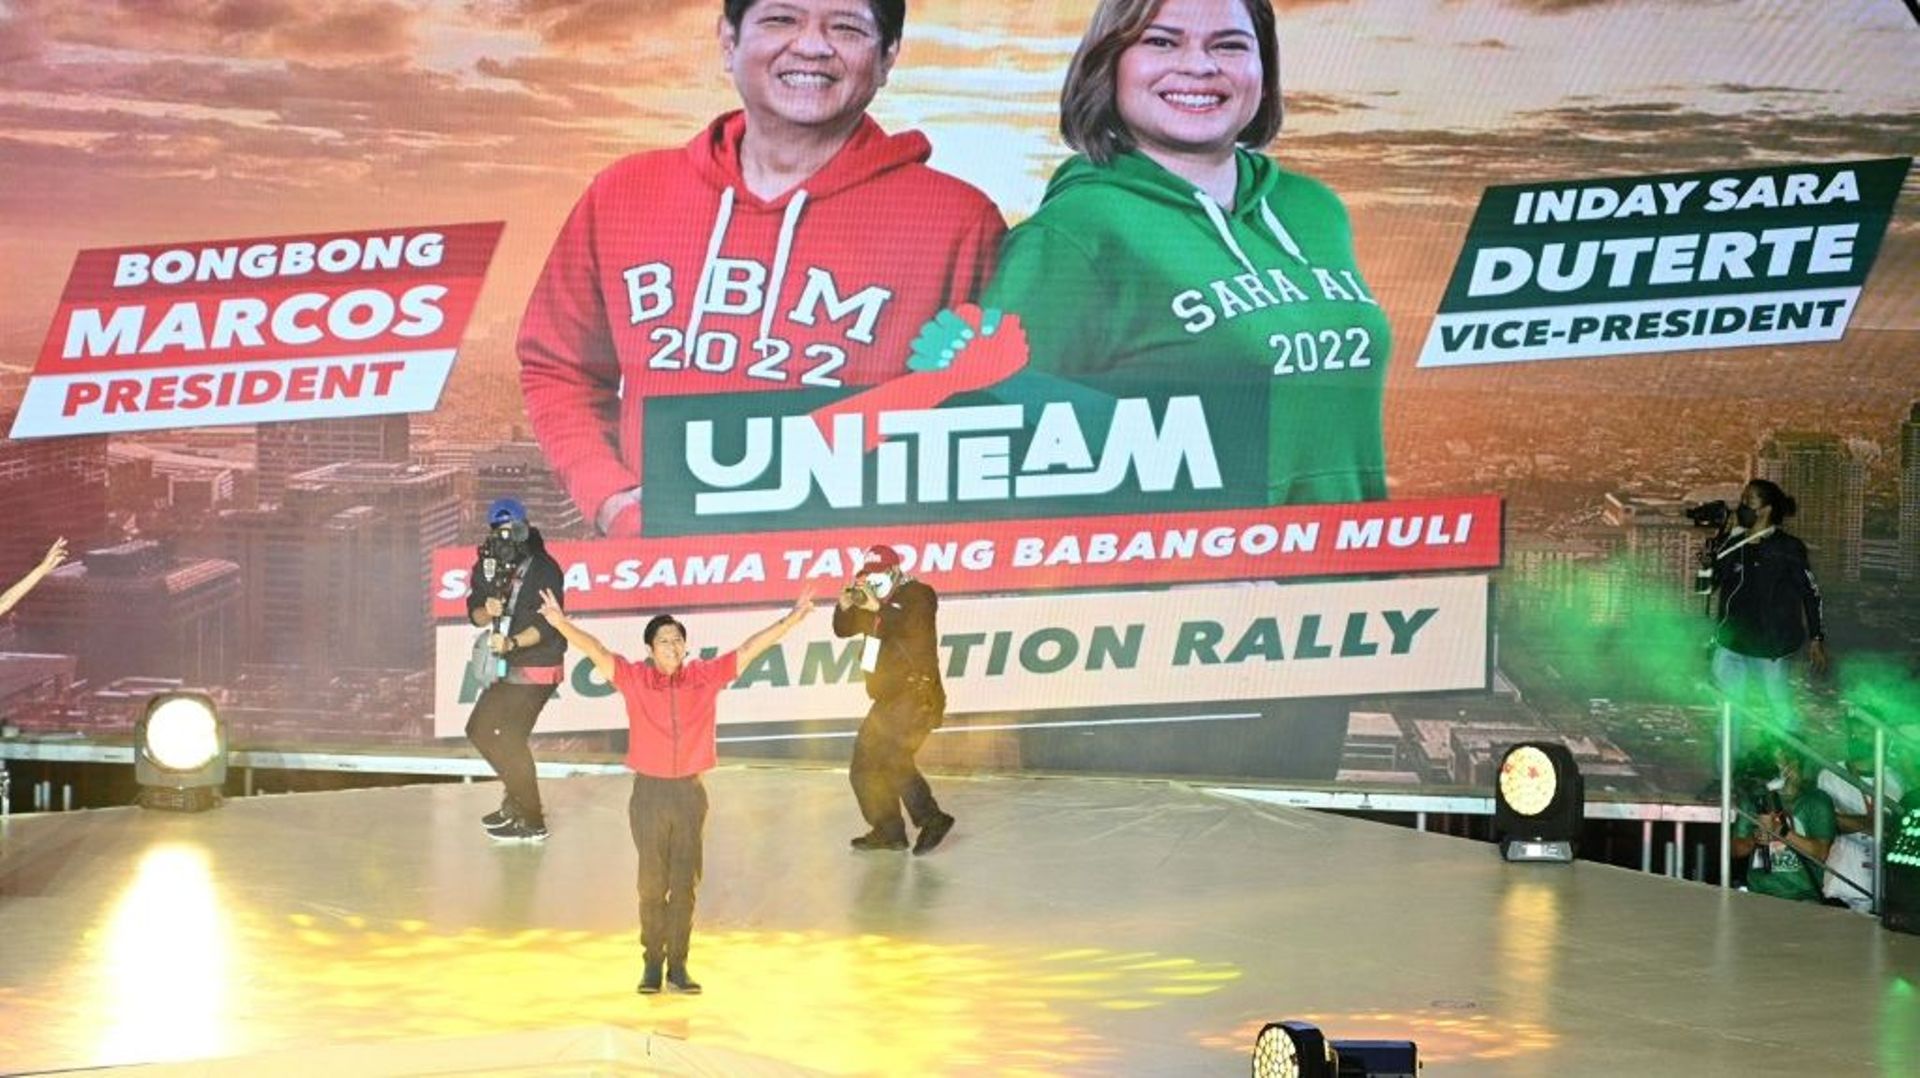 Ferdinand "Bongbong" Marcos Jr (C, en rouge), candidat à l'élection présidentielle aux Philippines, sur scène lors d'un meeting à Bocaue le 8 février 2022